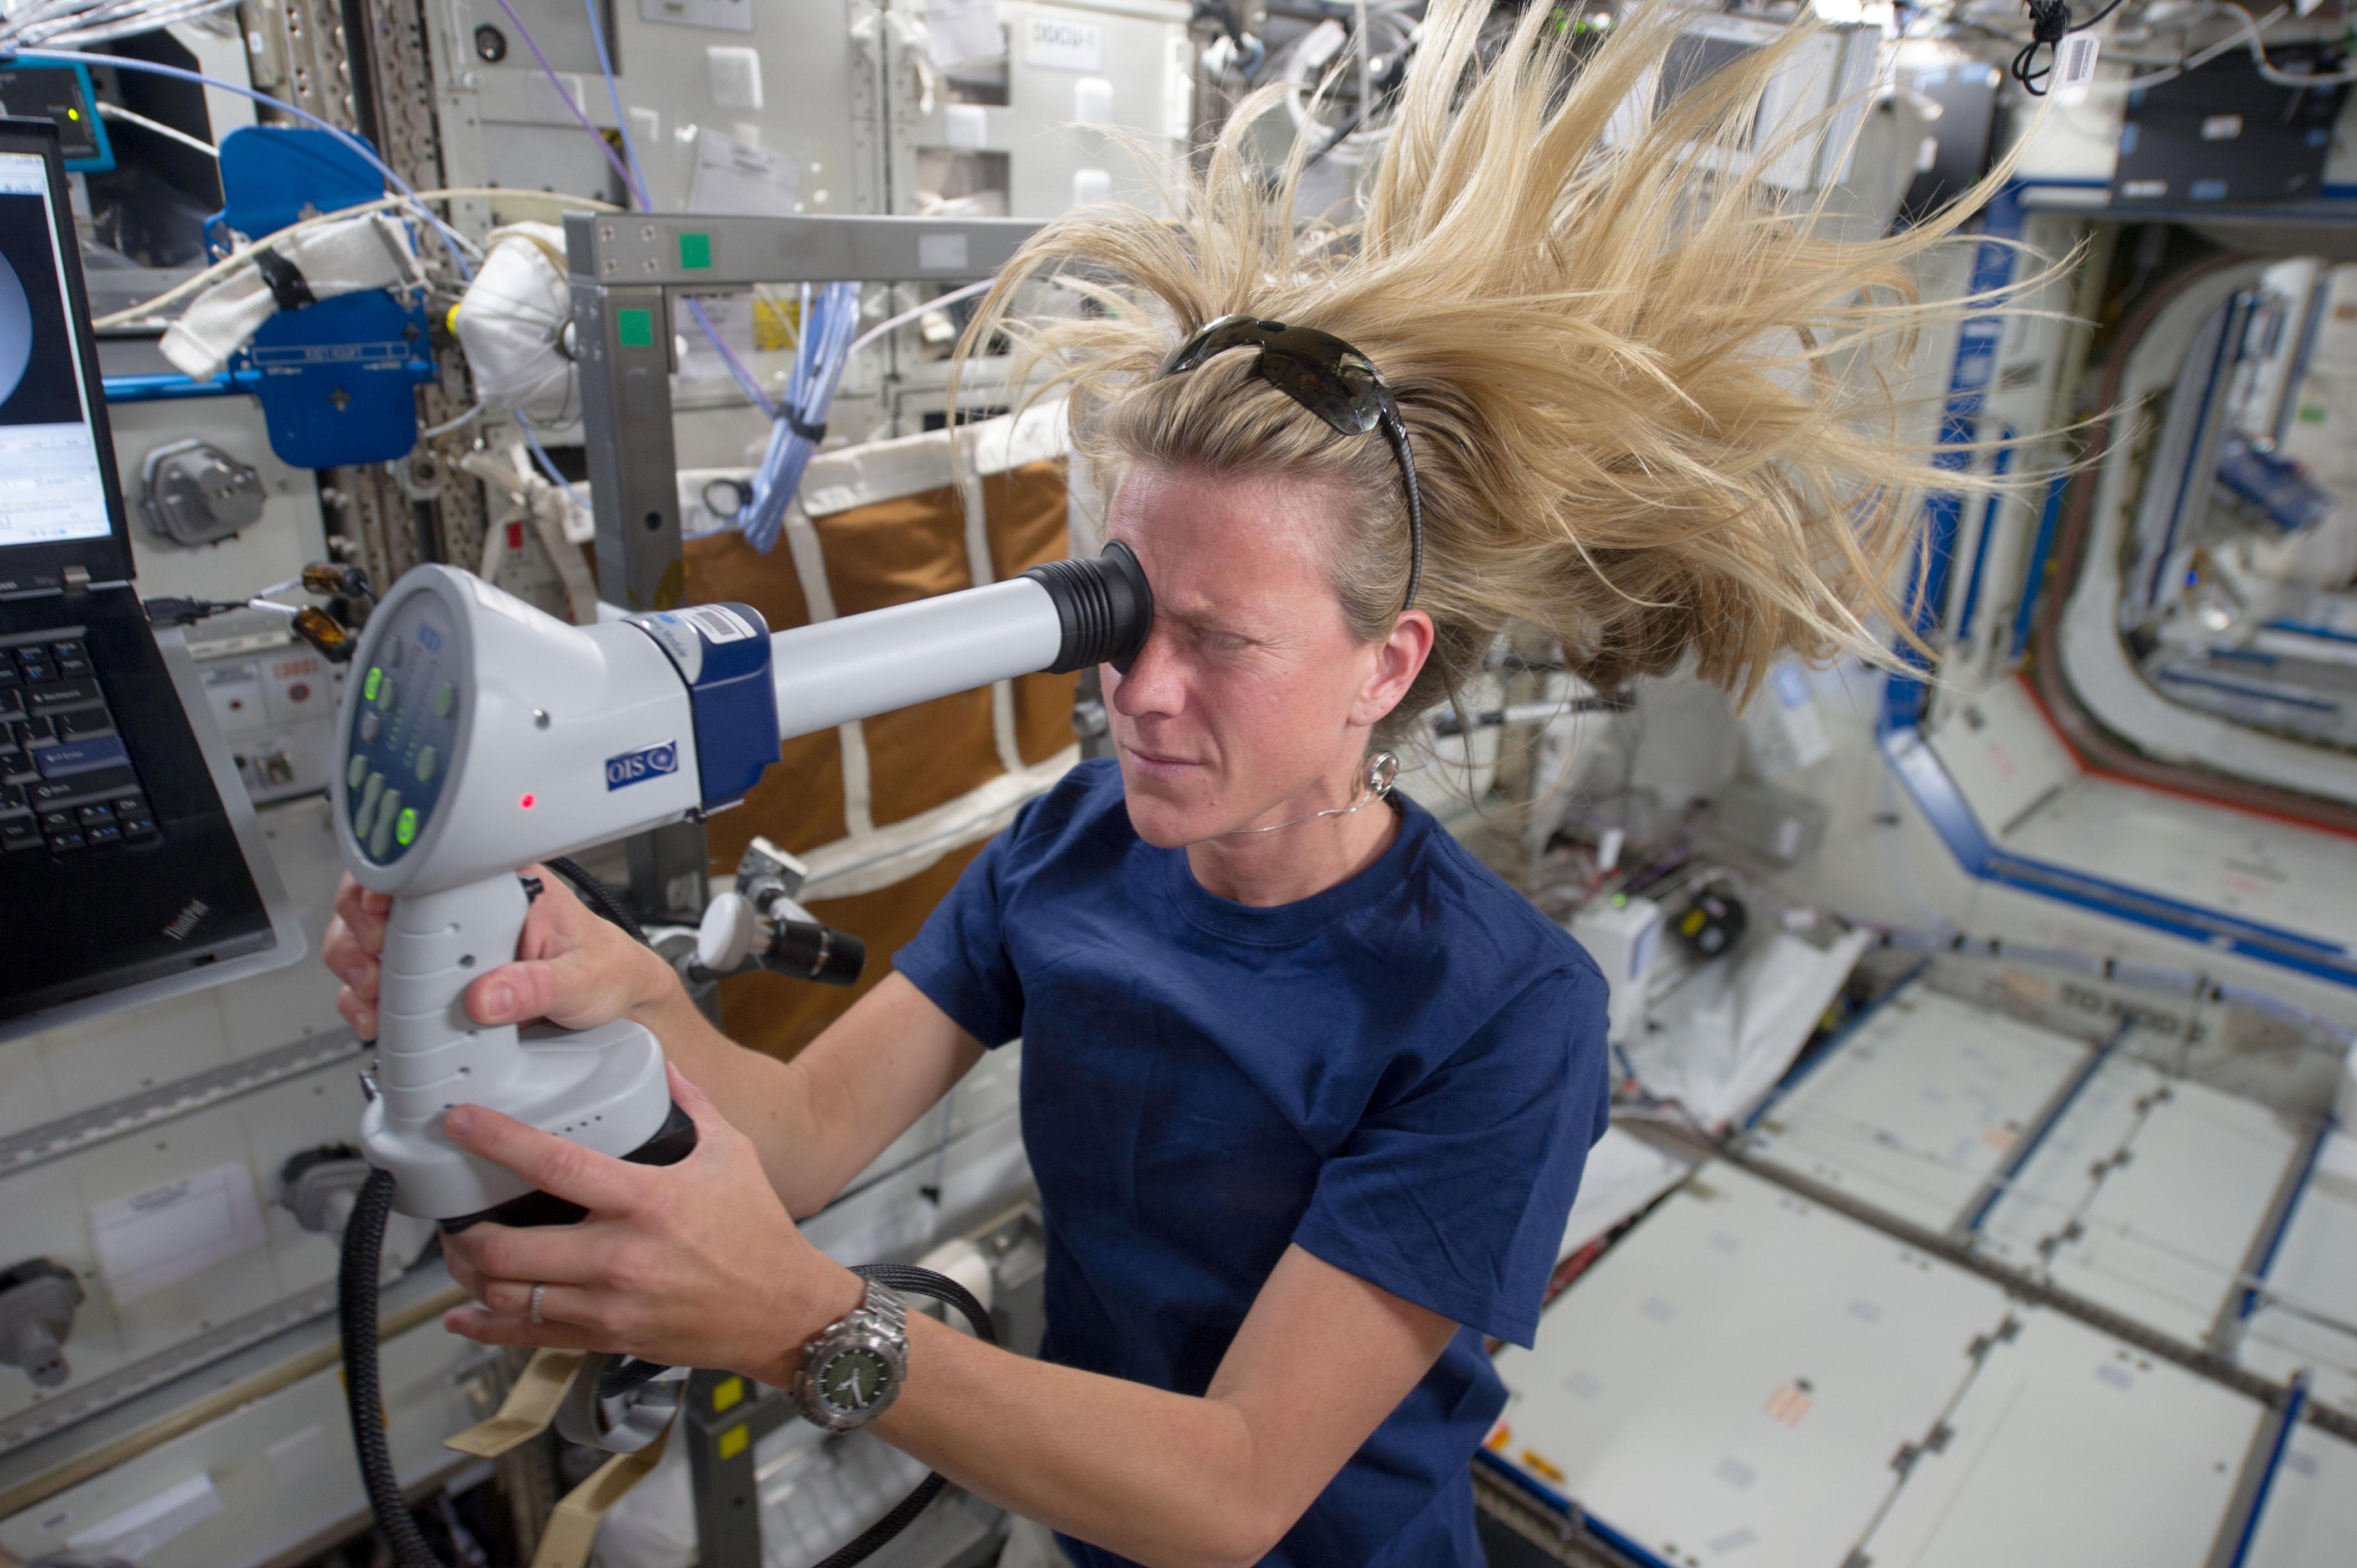 La astronauta de la NASA Karen Nyberg, ingeniera de vuelo de la Expedición 36, realiza un examen de salud ocular en el laboratorio Destiny de la Estación Espacial Internacional en órbita terrestre.